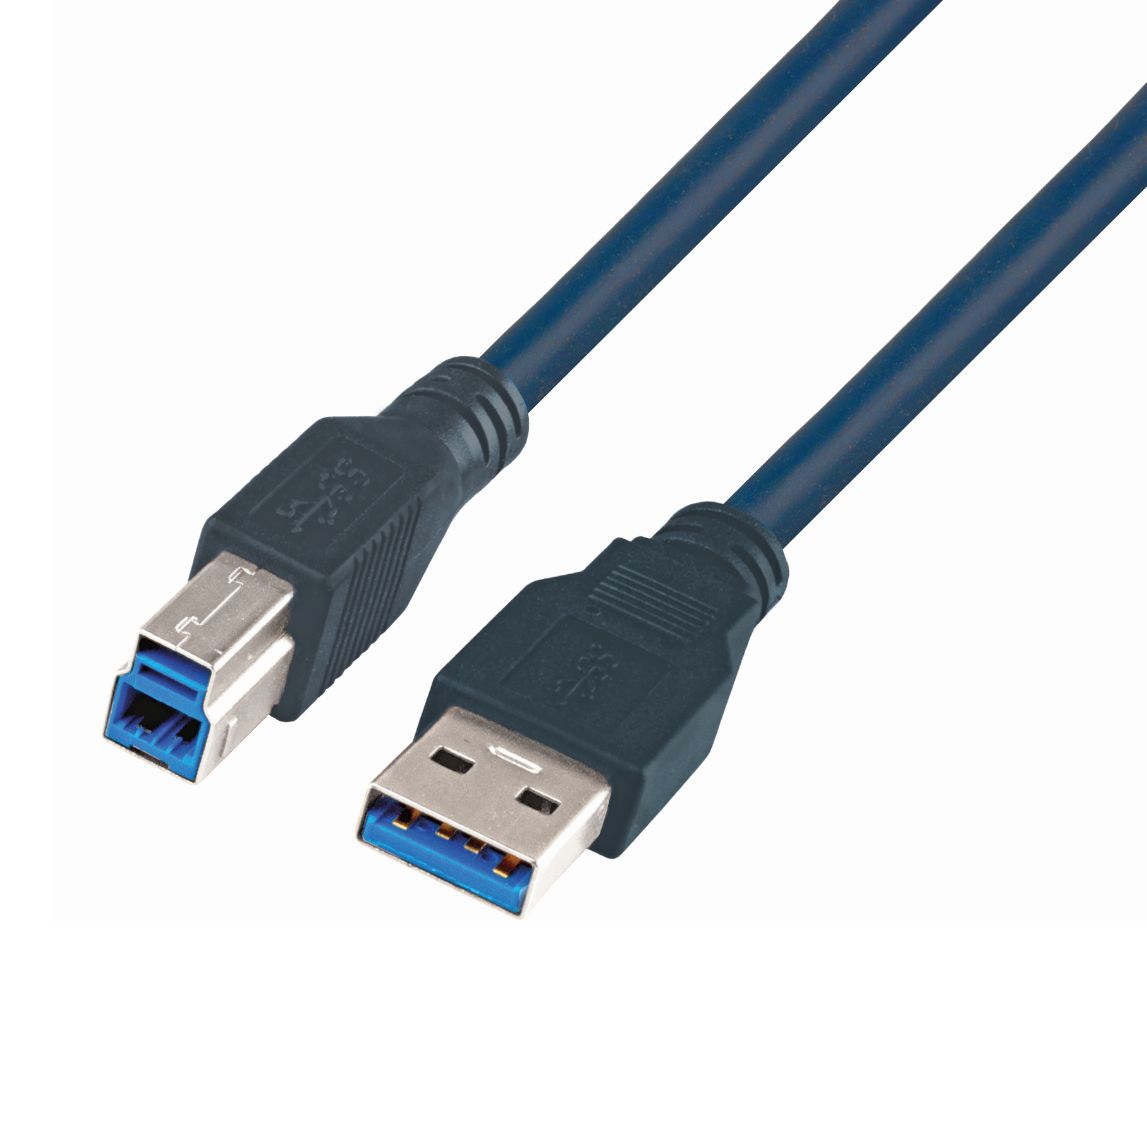 USB 3.0 hochflexibles Industriekabel Qualität PREMIUM+ mit 2 Ferritkernen 50cm